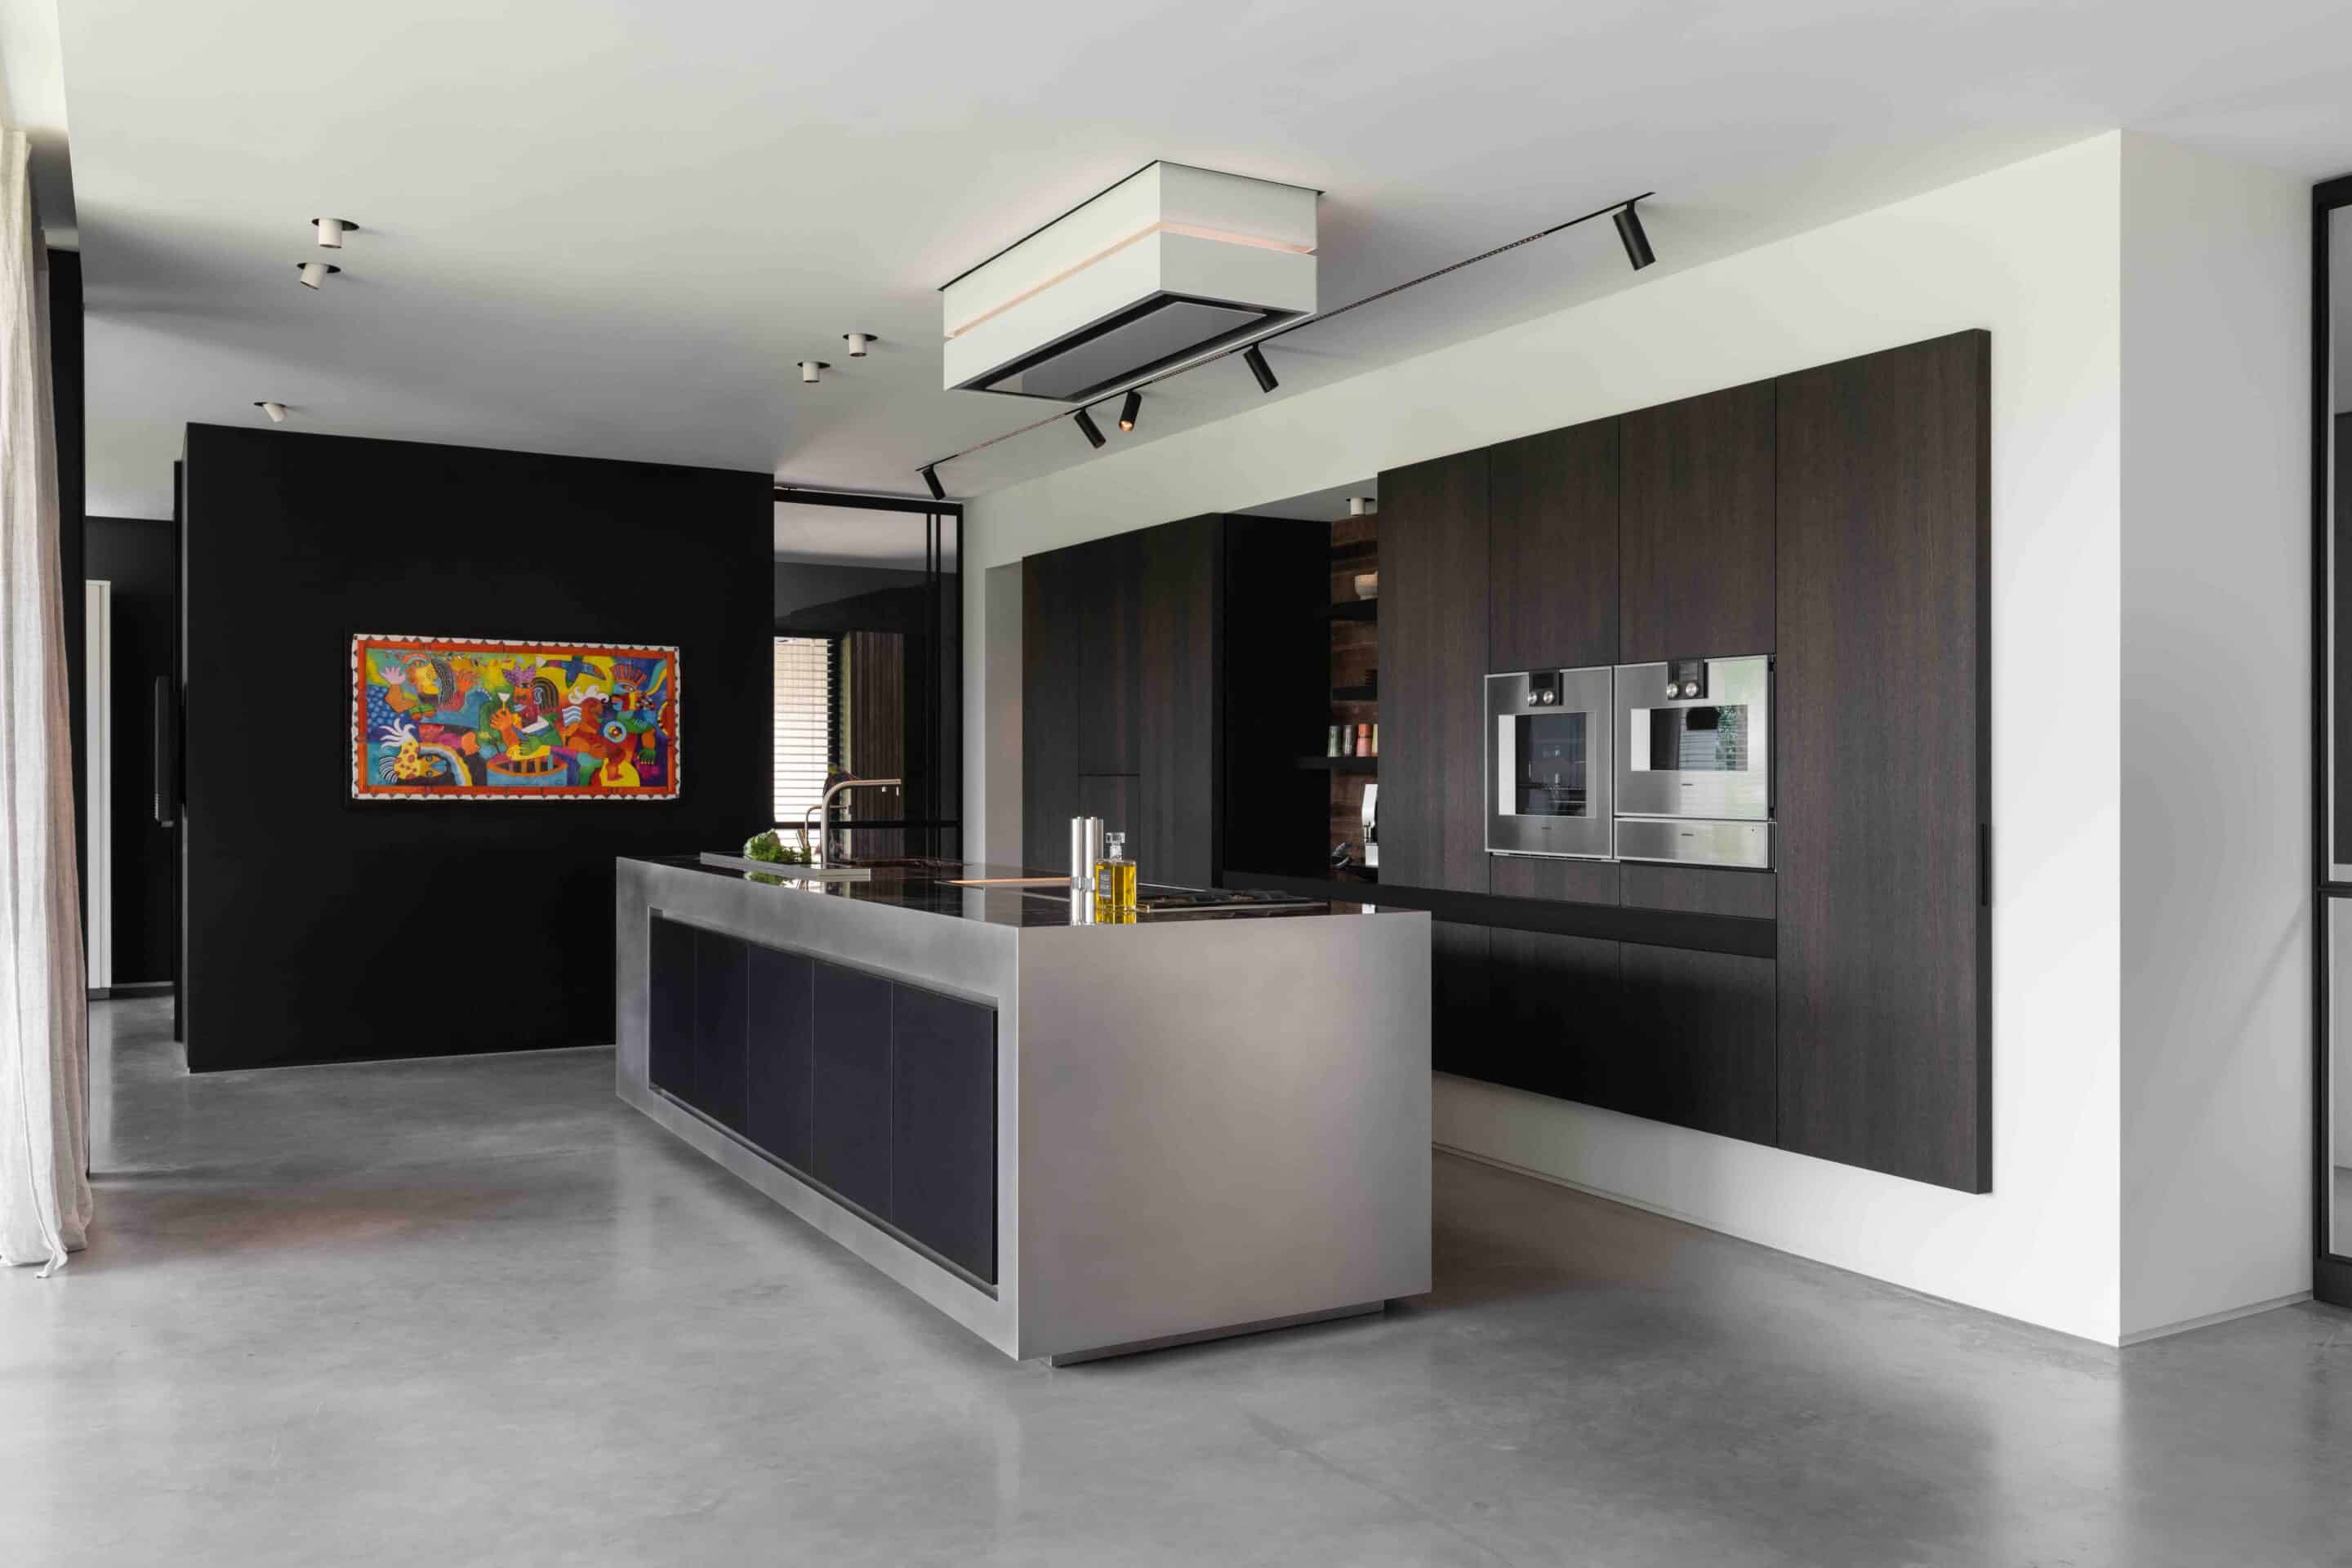 Keuken, zwarte/grijze kleuren